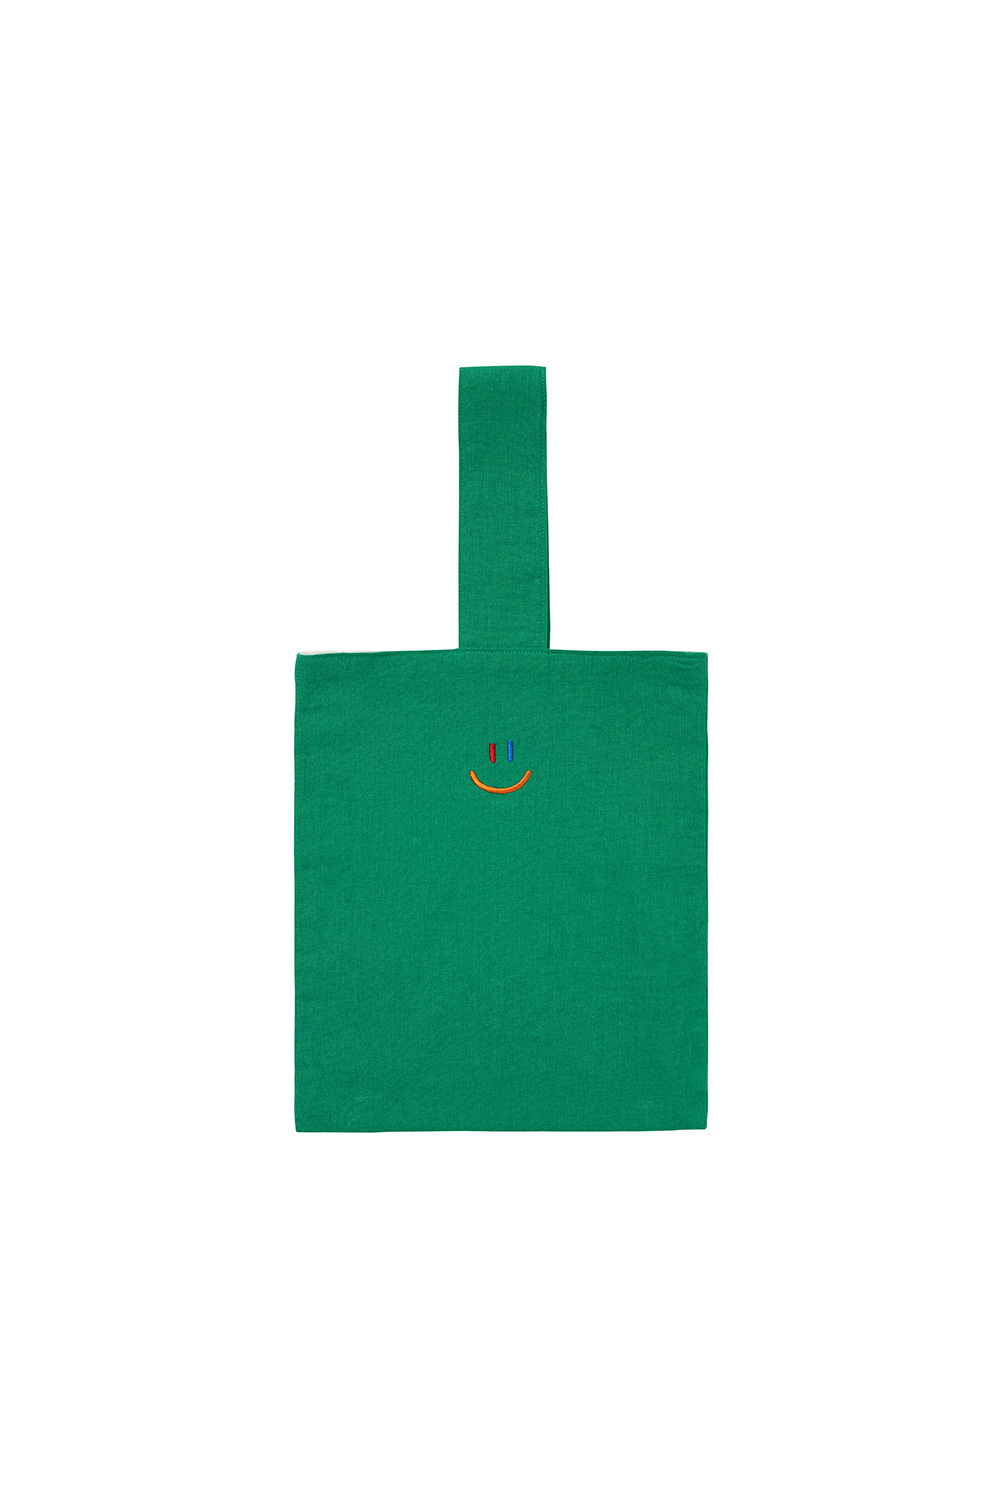 LaLa Eco Bag [Green]